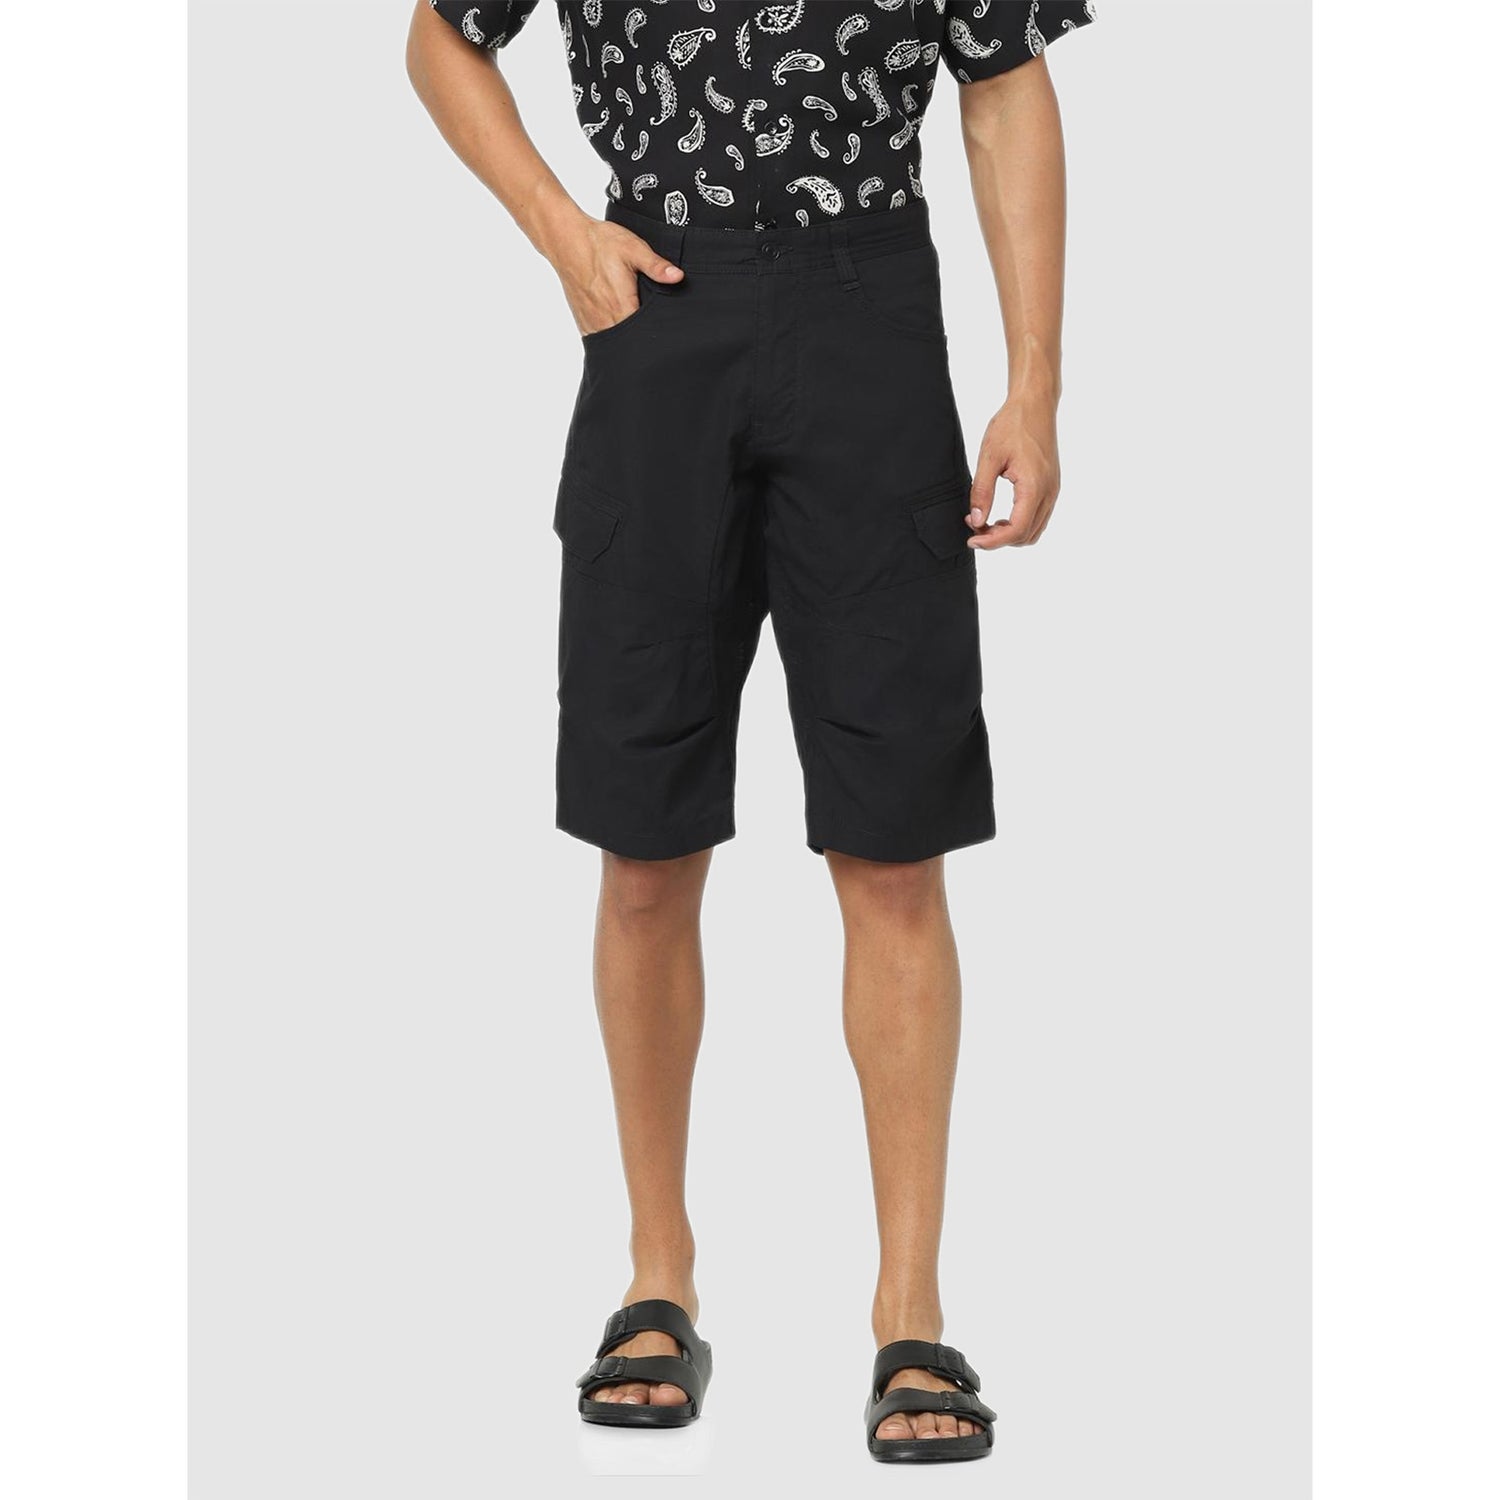 Black Solid Regular Fit Cargo Shorts (BOCOURTEBM)